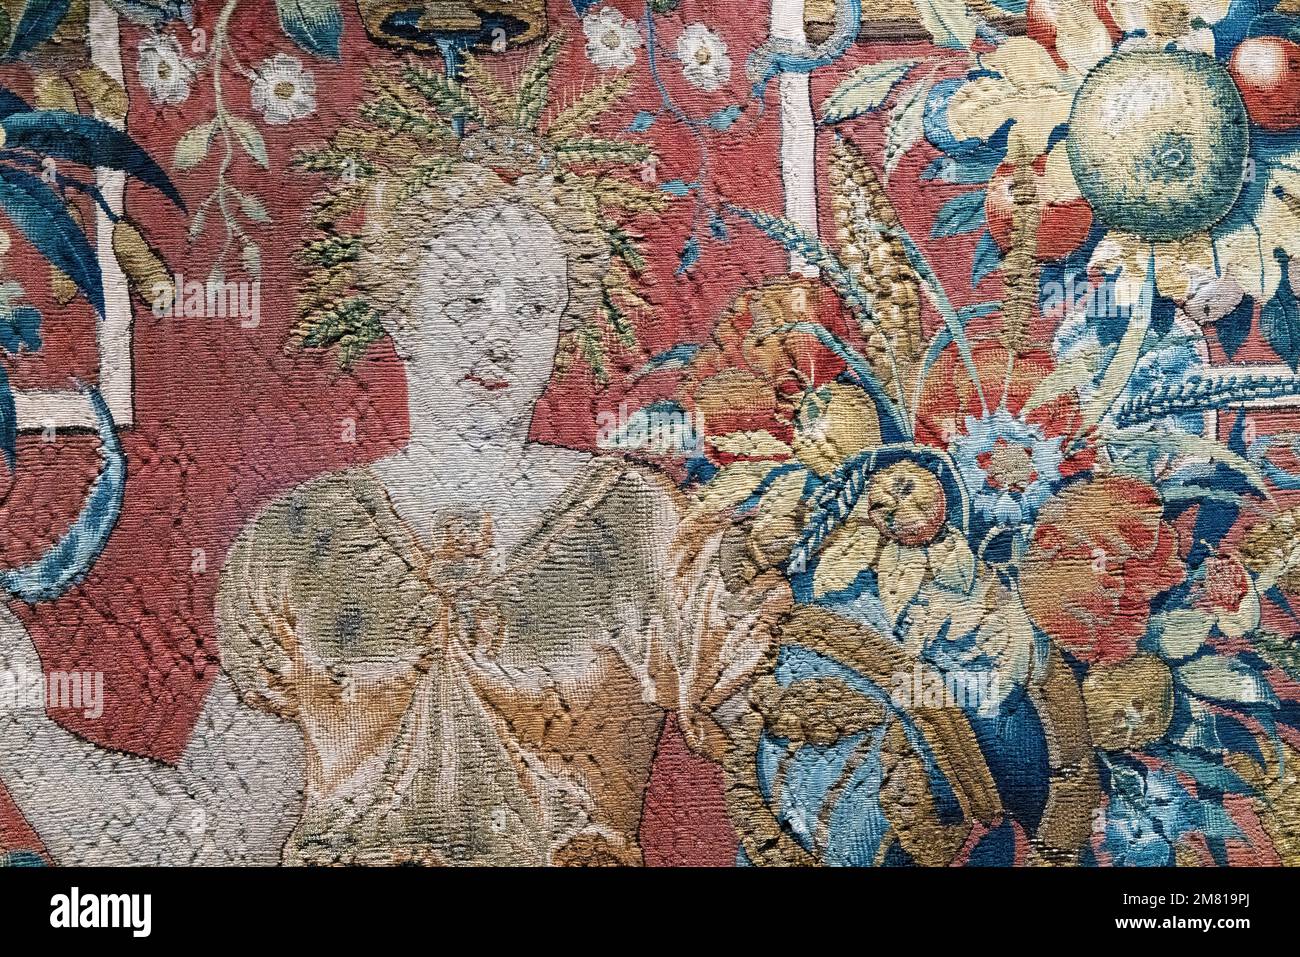 Détail de la tapisserie médiévale du 16th siècle, avec la déesse Cere. Bruxelles 1560, laine, soie, argent et fil doré-argent. Château de Wawel Cracovie Pologne Banque D'Images